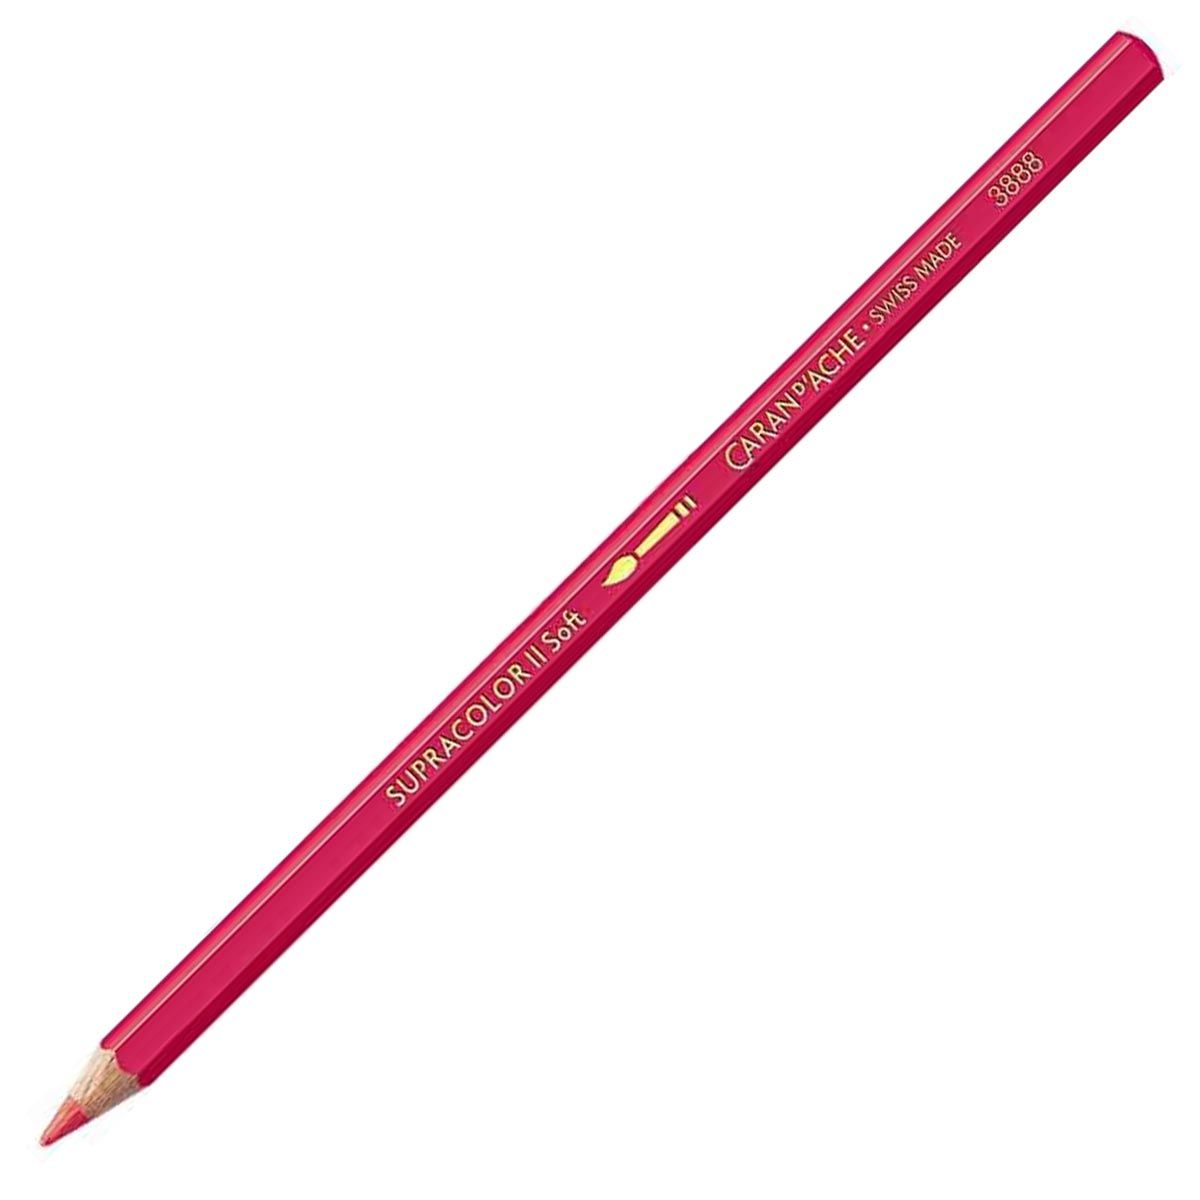 Caran d'Ache Supracolor ll Soft Aquarelle Pencil - Ruby Red 280